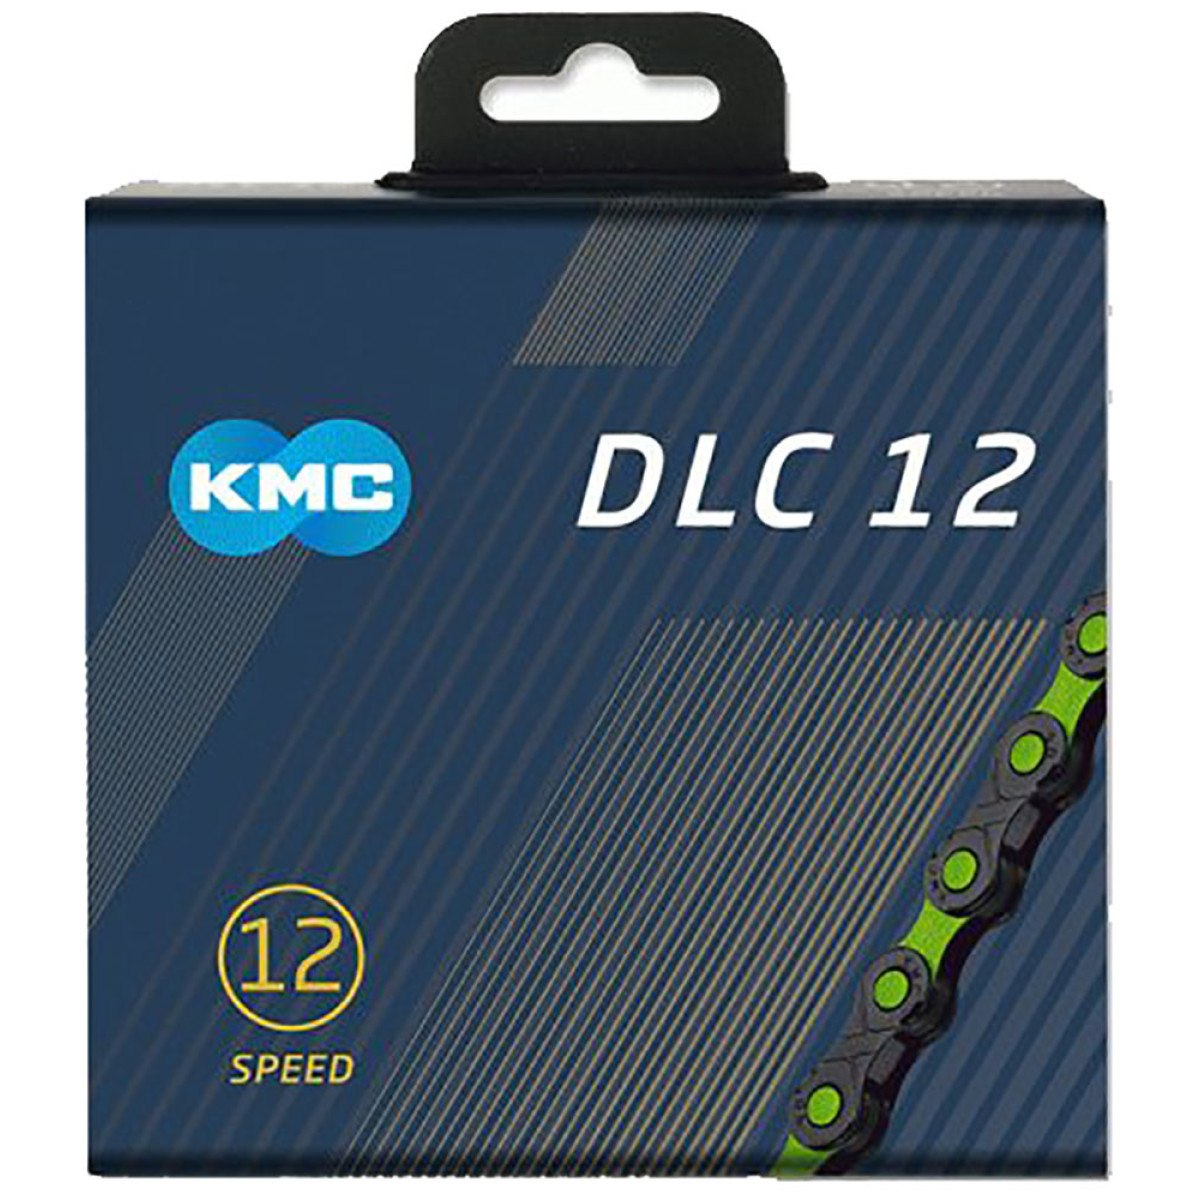 KMC DLC12 grandinė / 12 pavarų / Black-Green